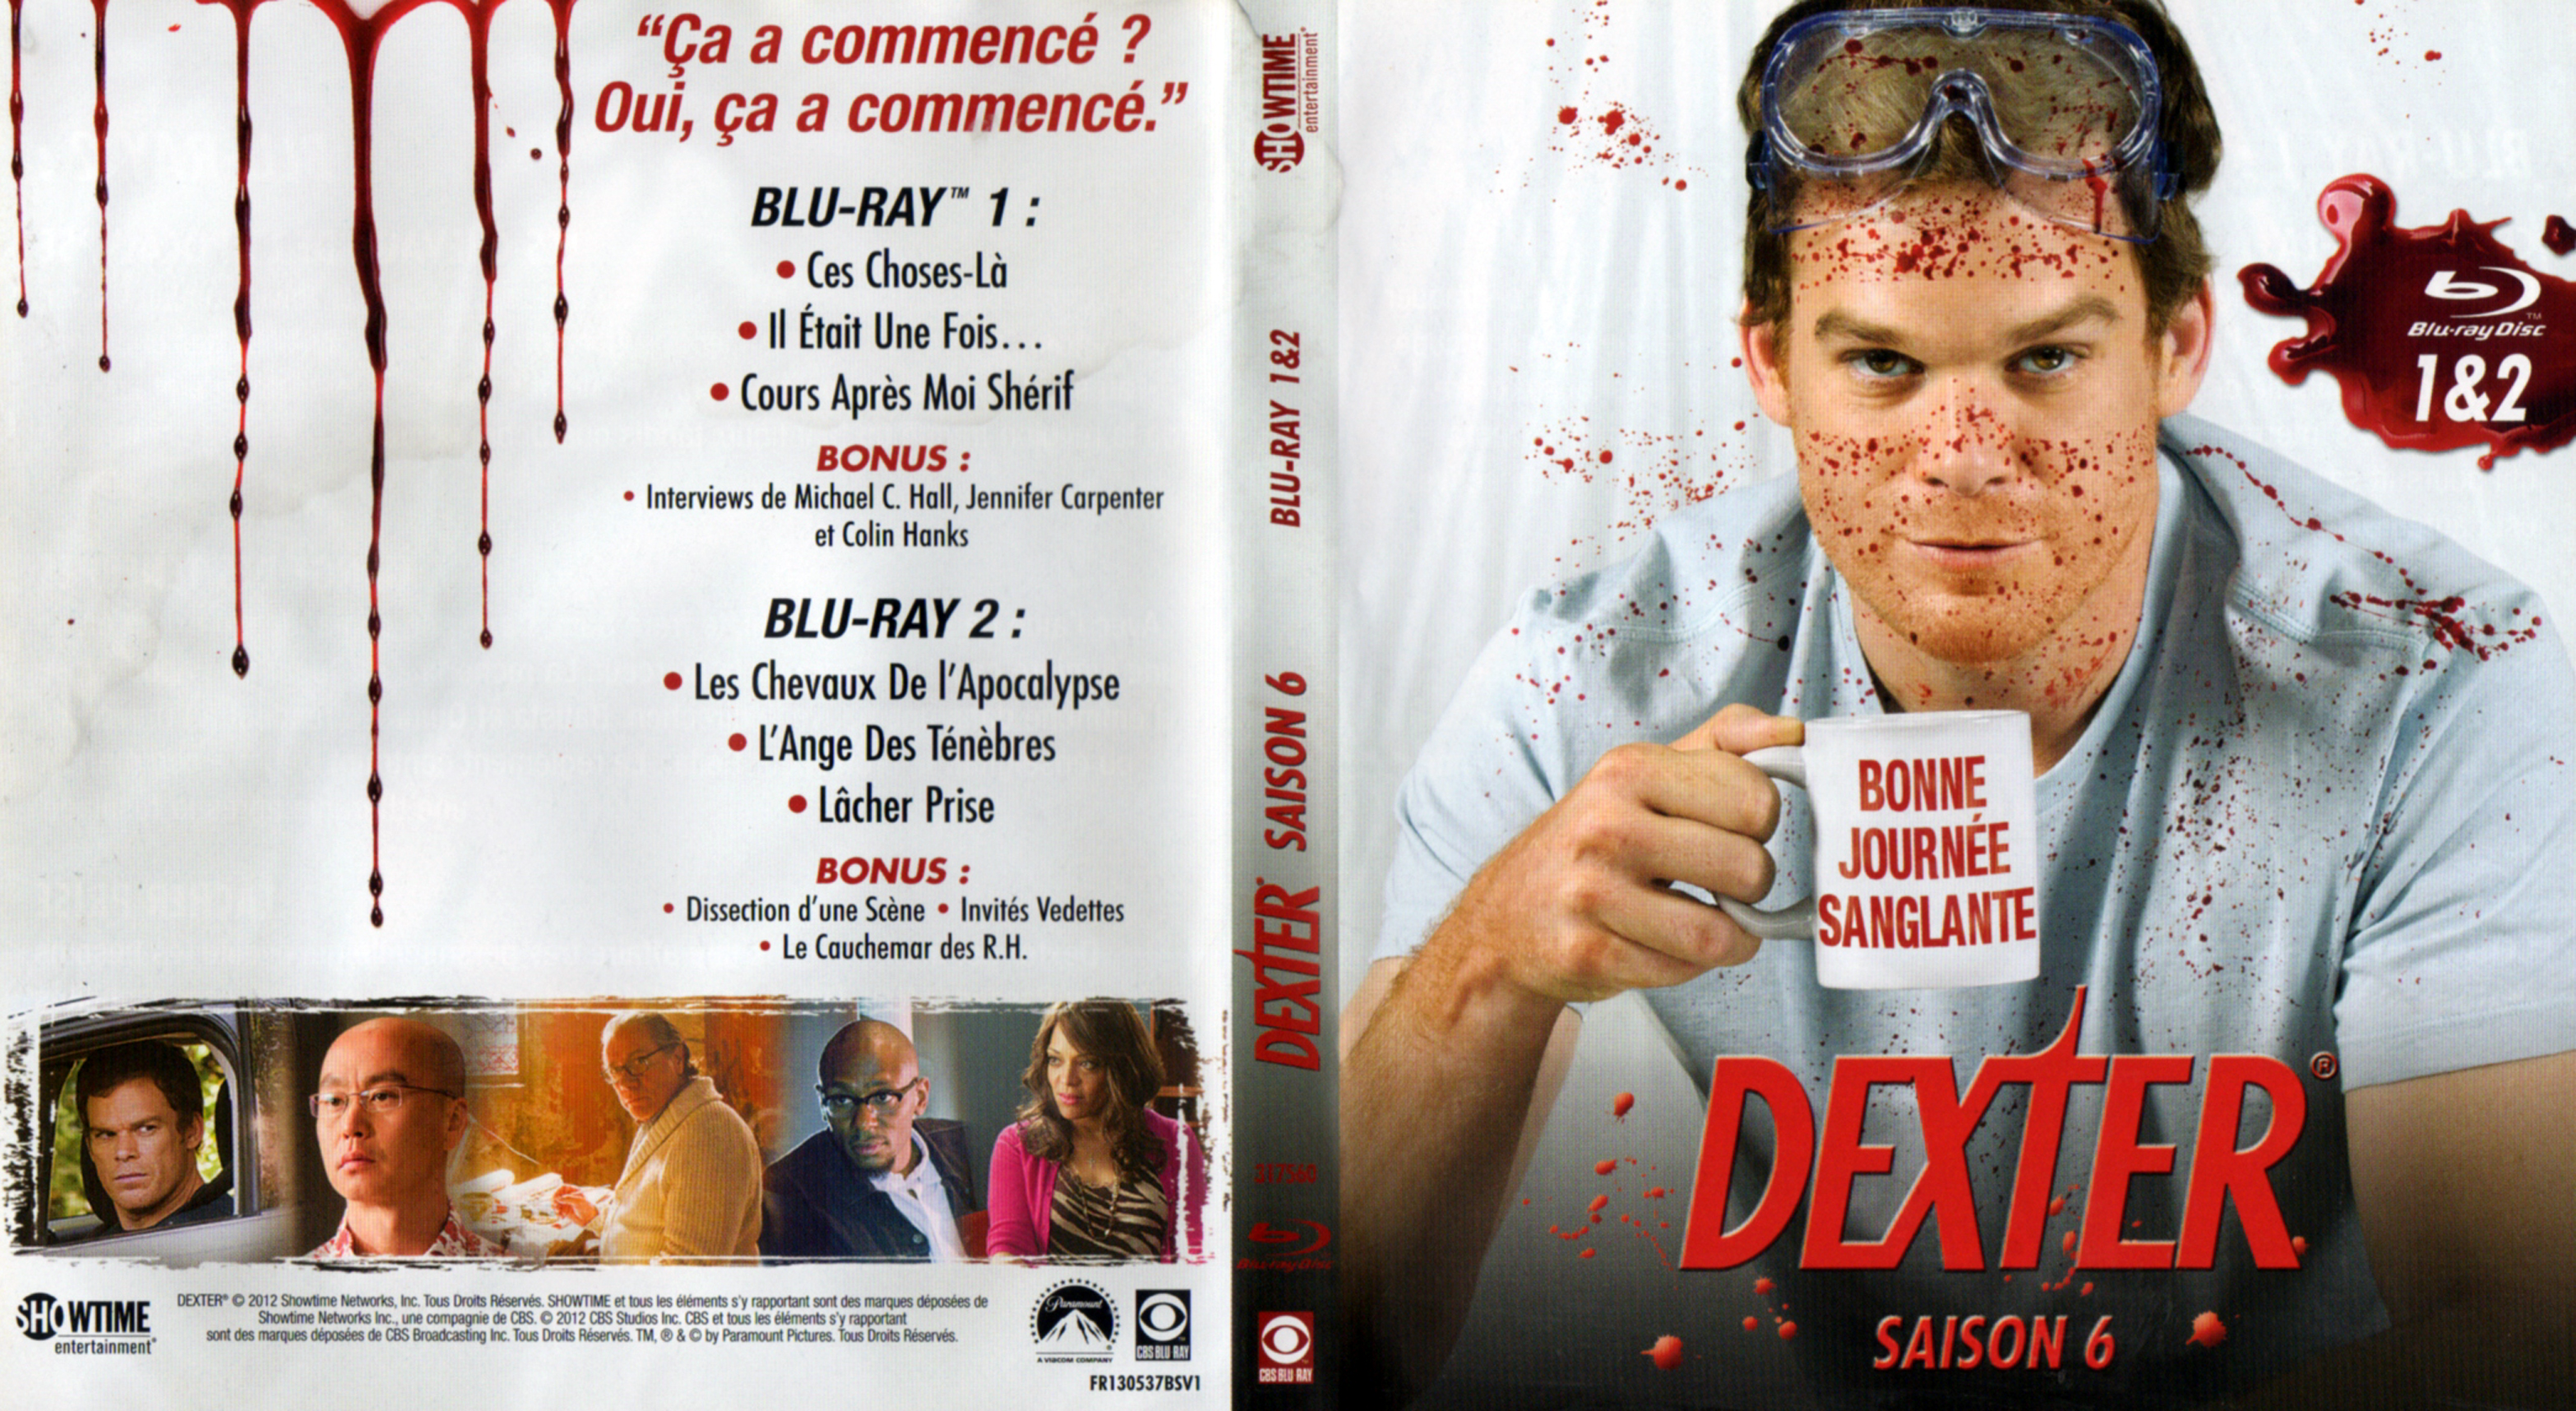 Jaquette DVD Dexter saison 6 DISC 1 (BLU-RAY)